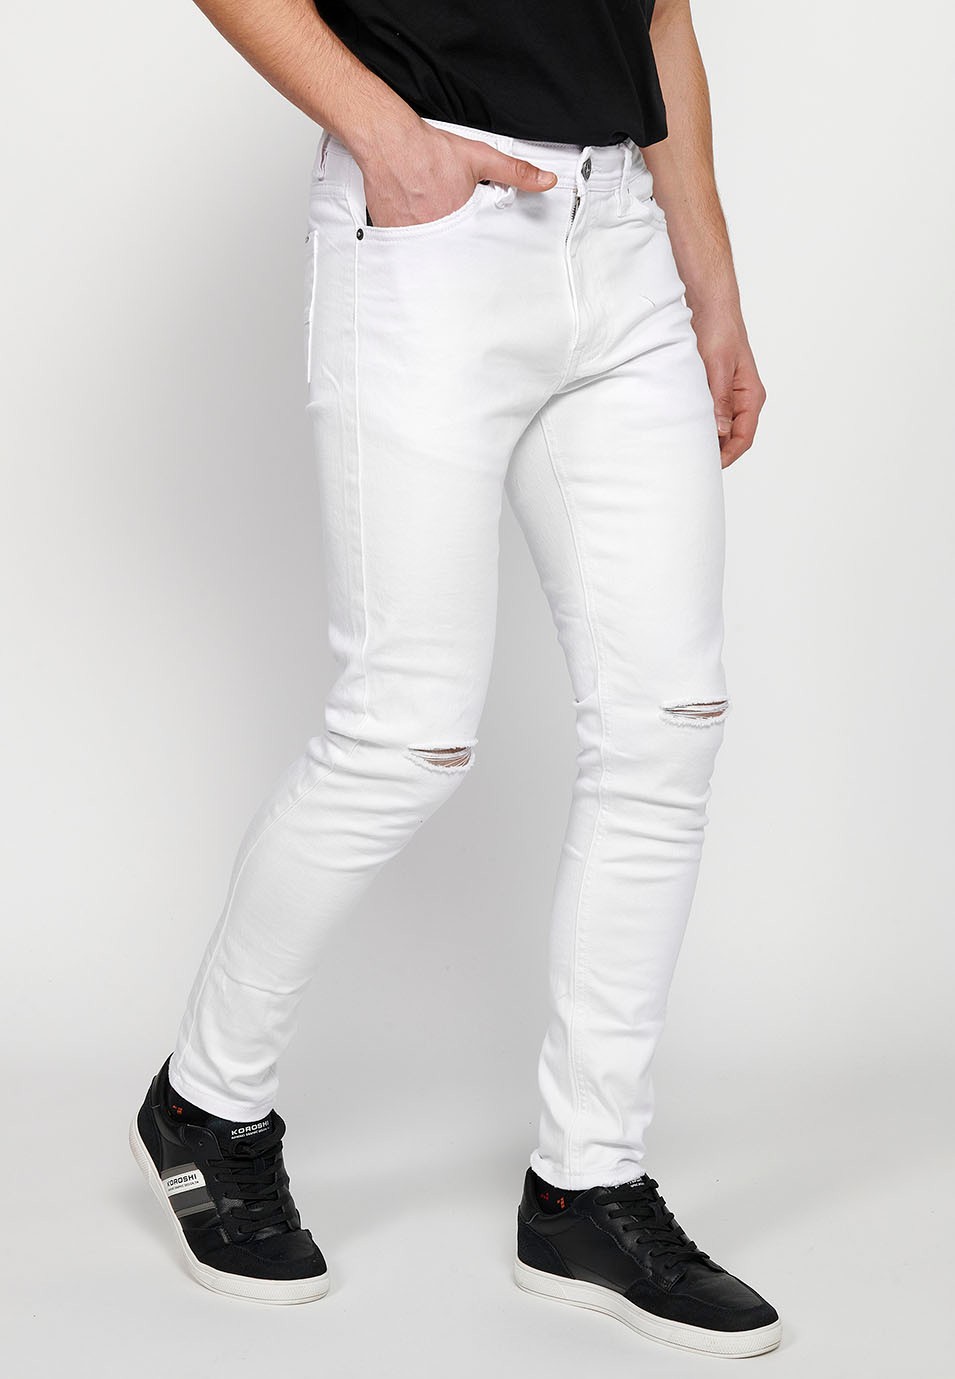 Pantalons jeans super skinny amb Tancament davanter amb cremallera i botó de Color Denim Blanc per a Home 3